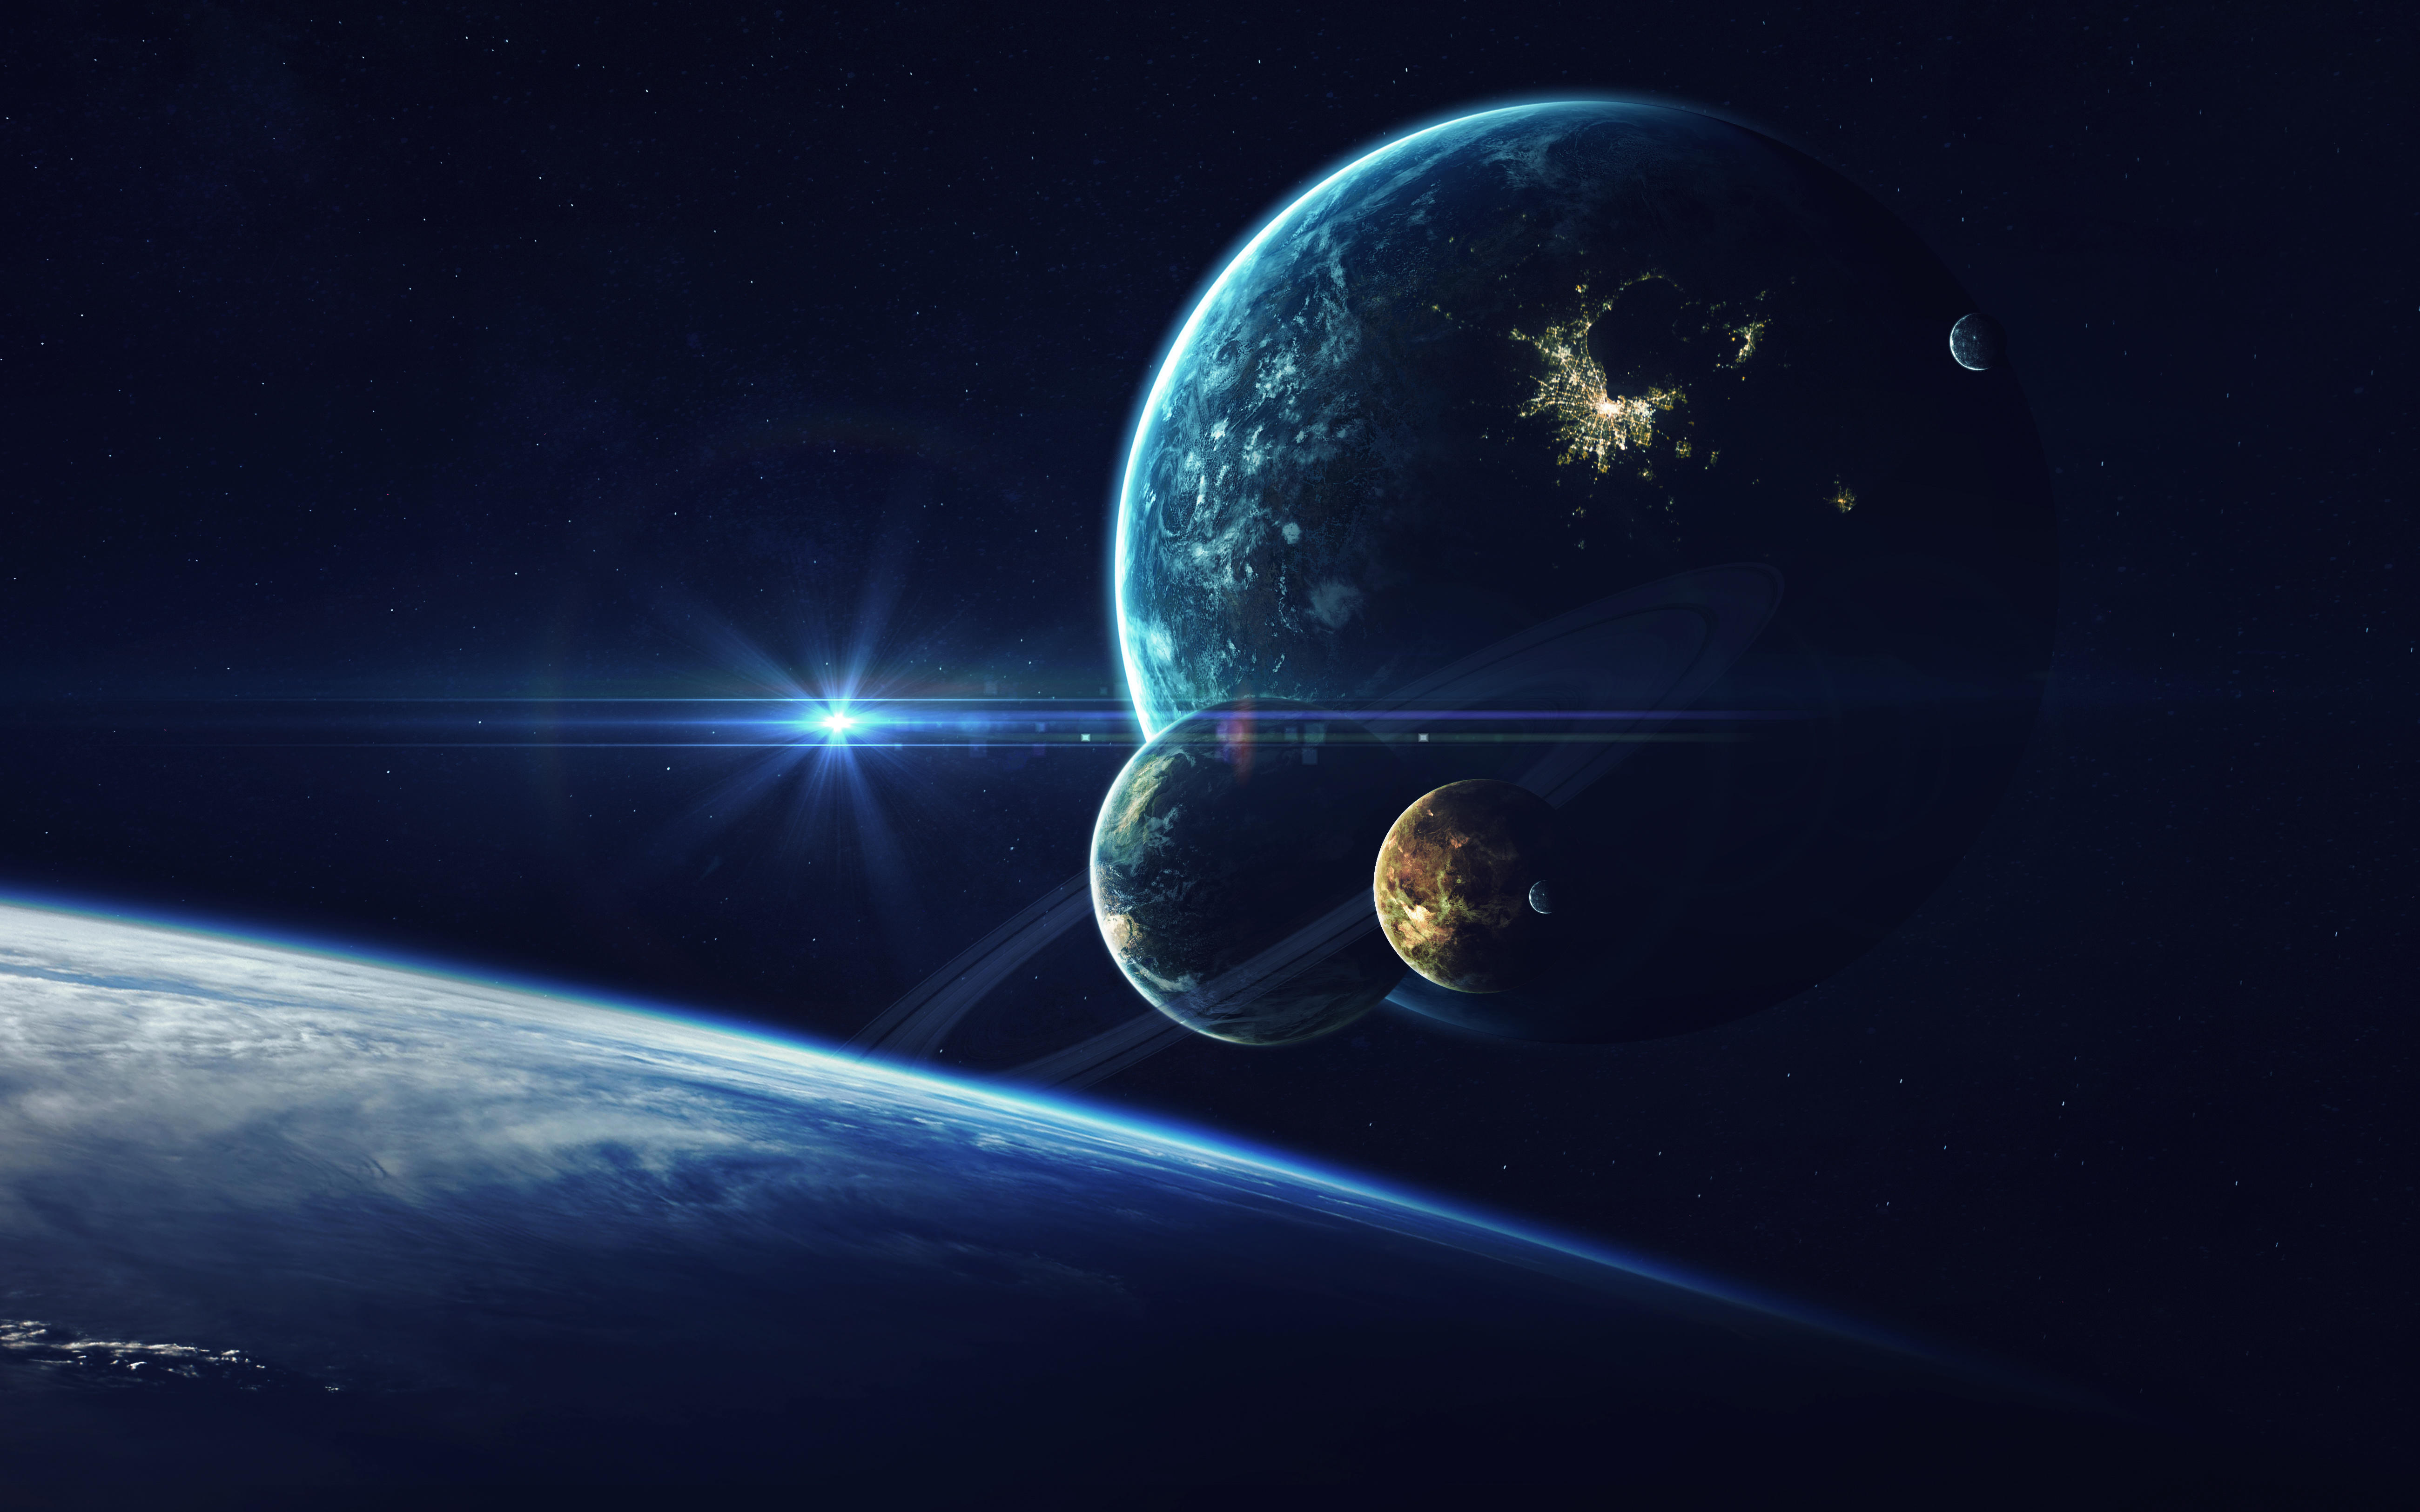 Бесплатное фото Обои планеты, космос на рабочий стол высокого качества